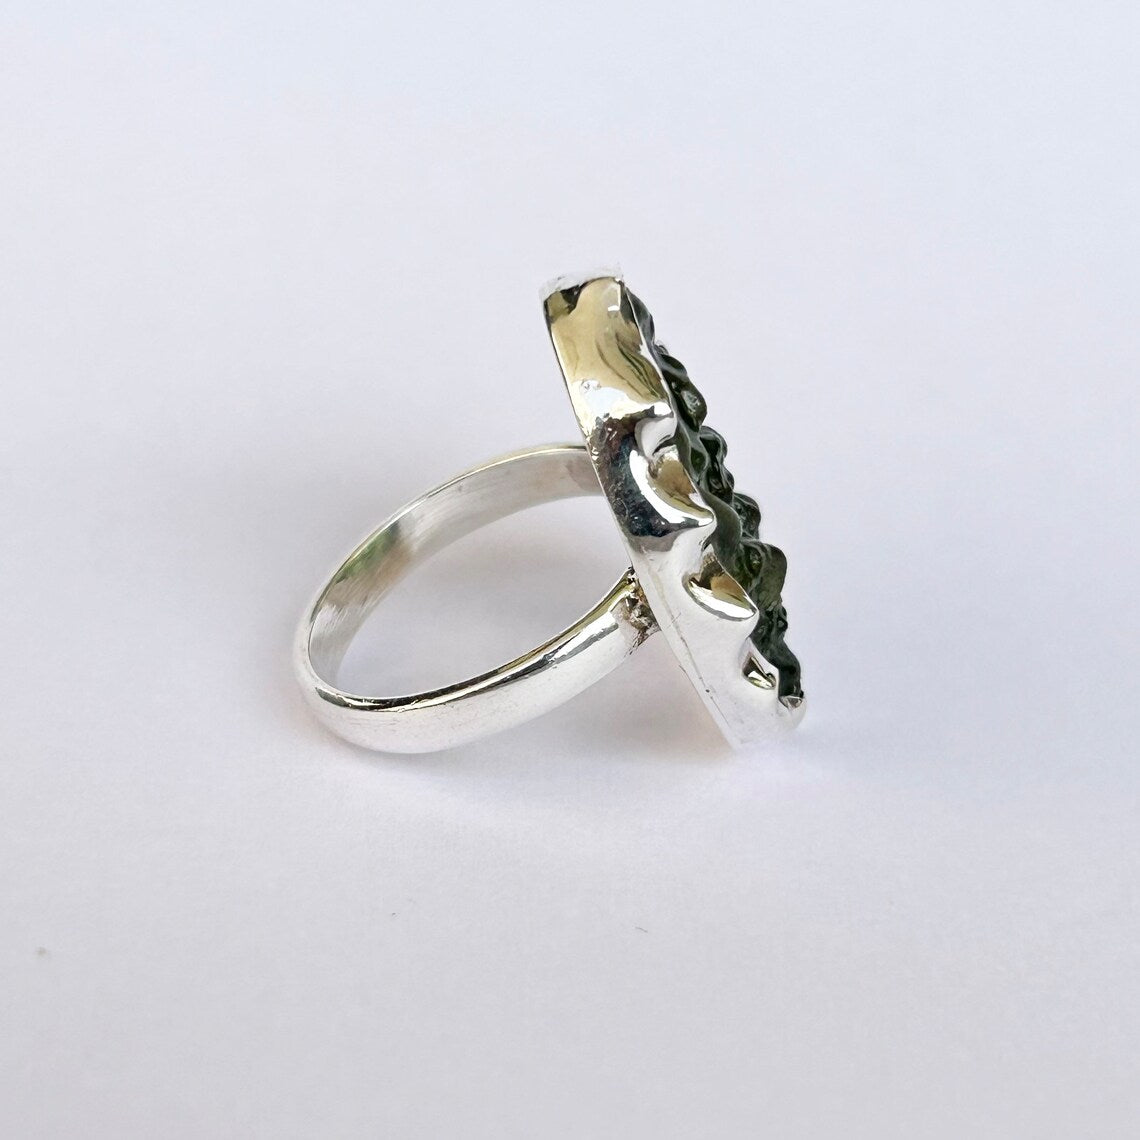 Raw Moldavite Ring - Natural Moldavite Ring - Sterling Silver Green Moldavite Ring - Moldavite Gemstone Silver Ring, Handmade Moldavite Ring